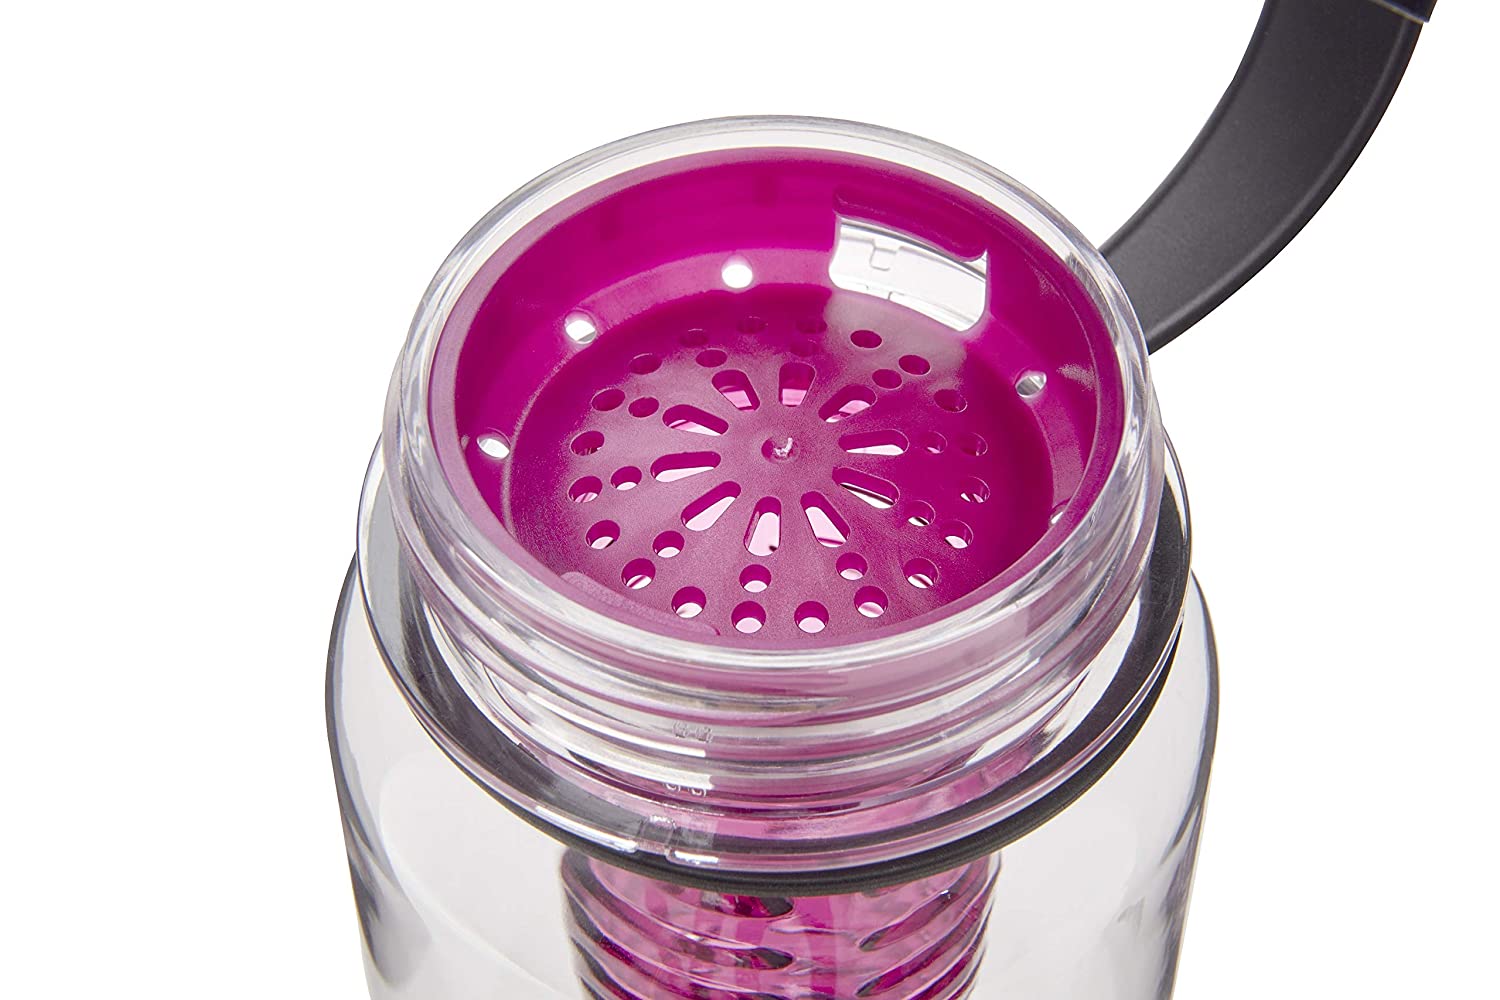 Reebok Tritan Infuser Water Bottle, 650 ML - Purple - Best Price online Prokicksports.com